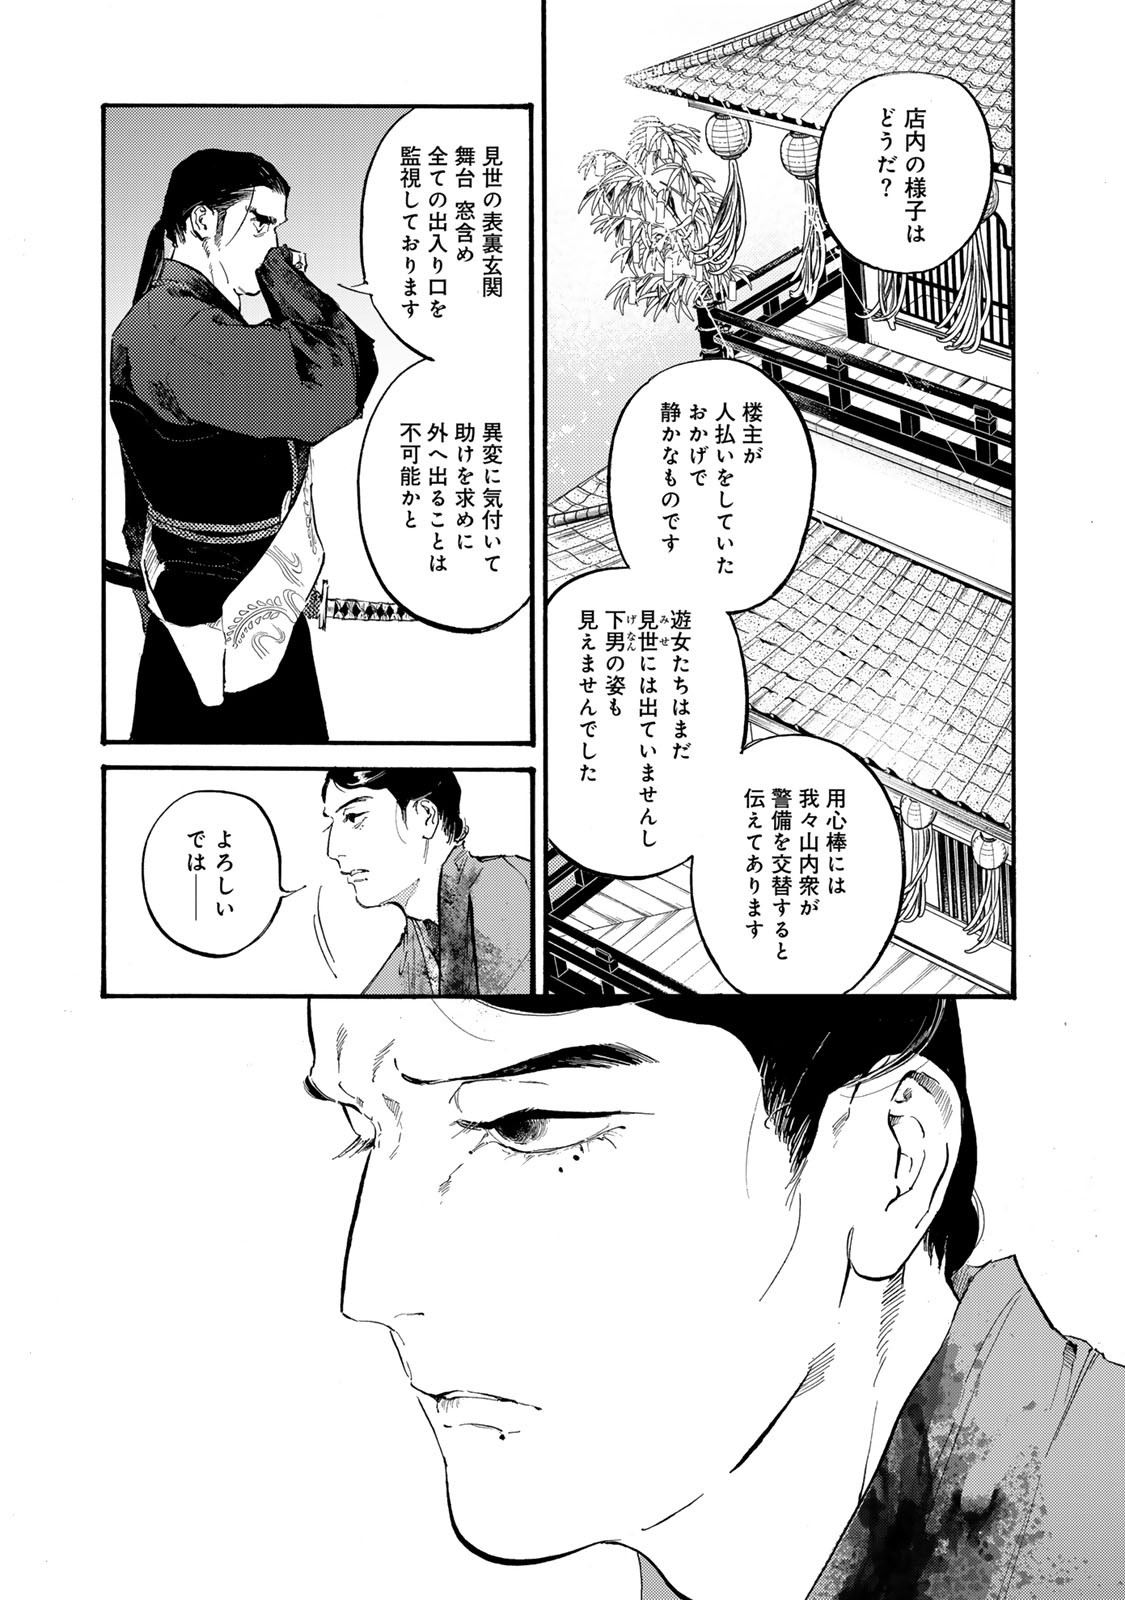 Karasu wa Aruji wo Erabanai - Chapter 40 - Page 17